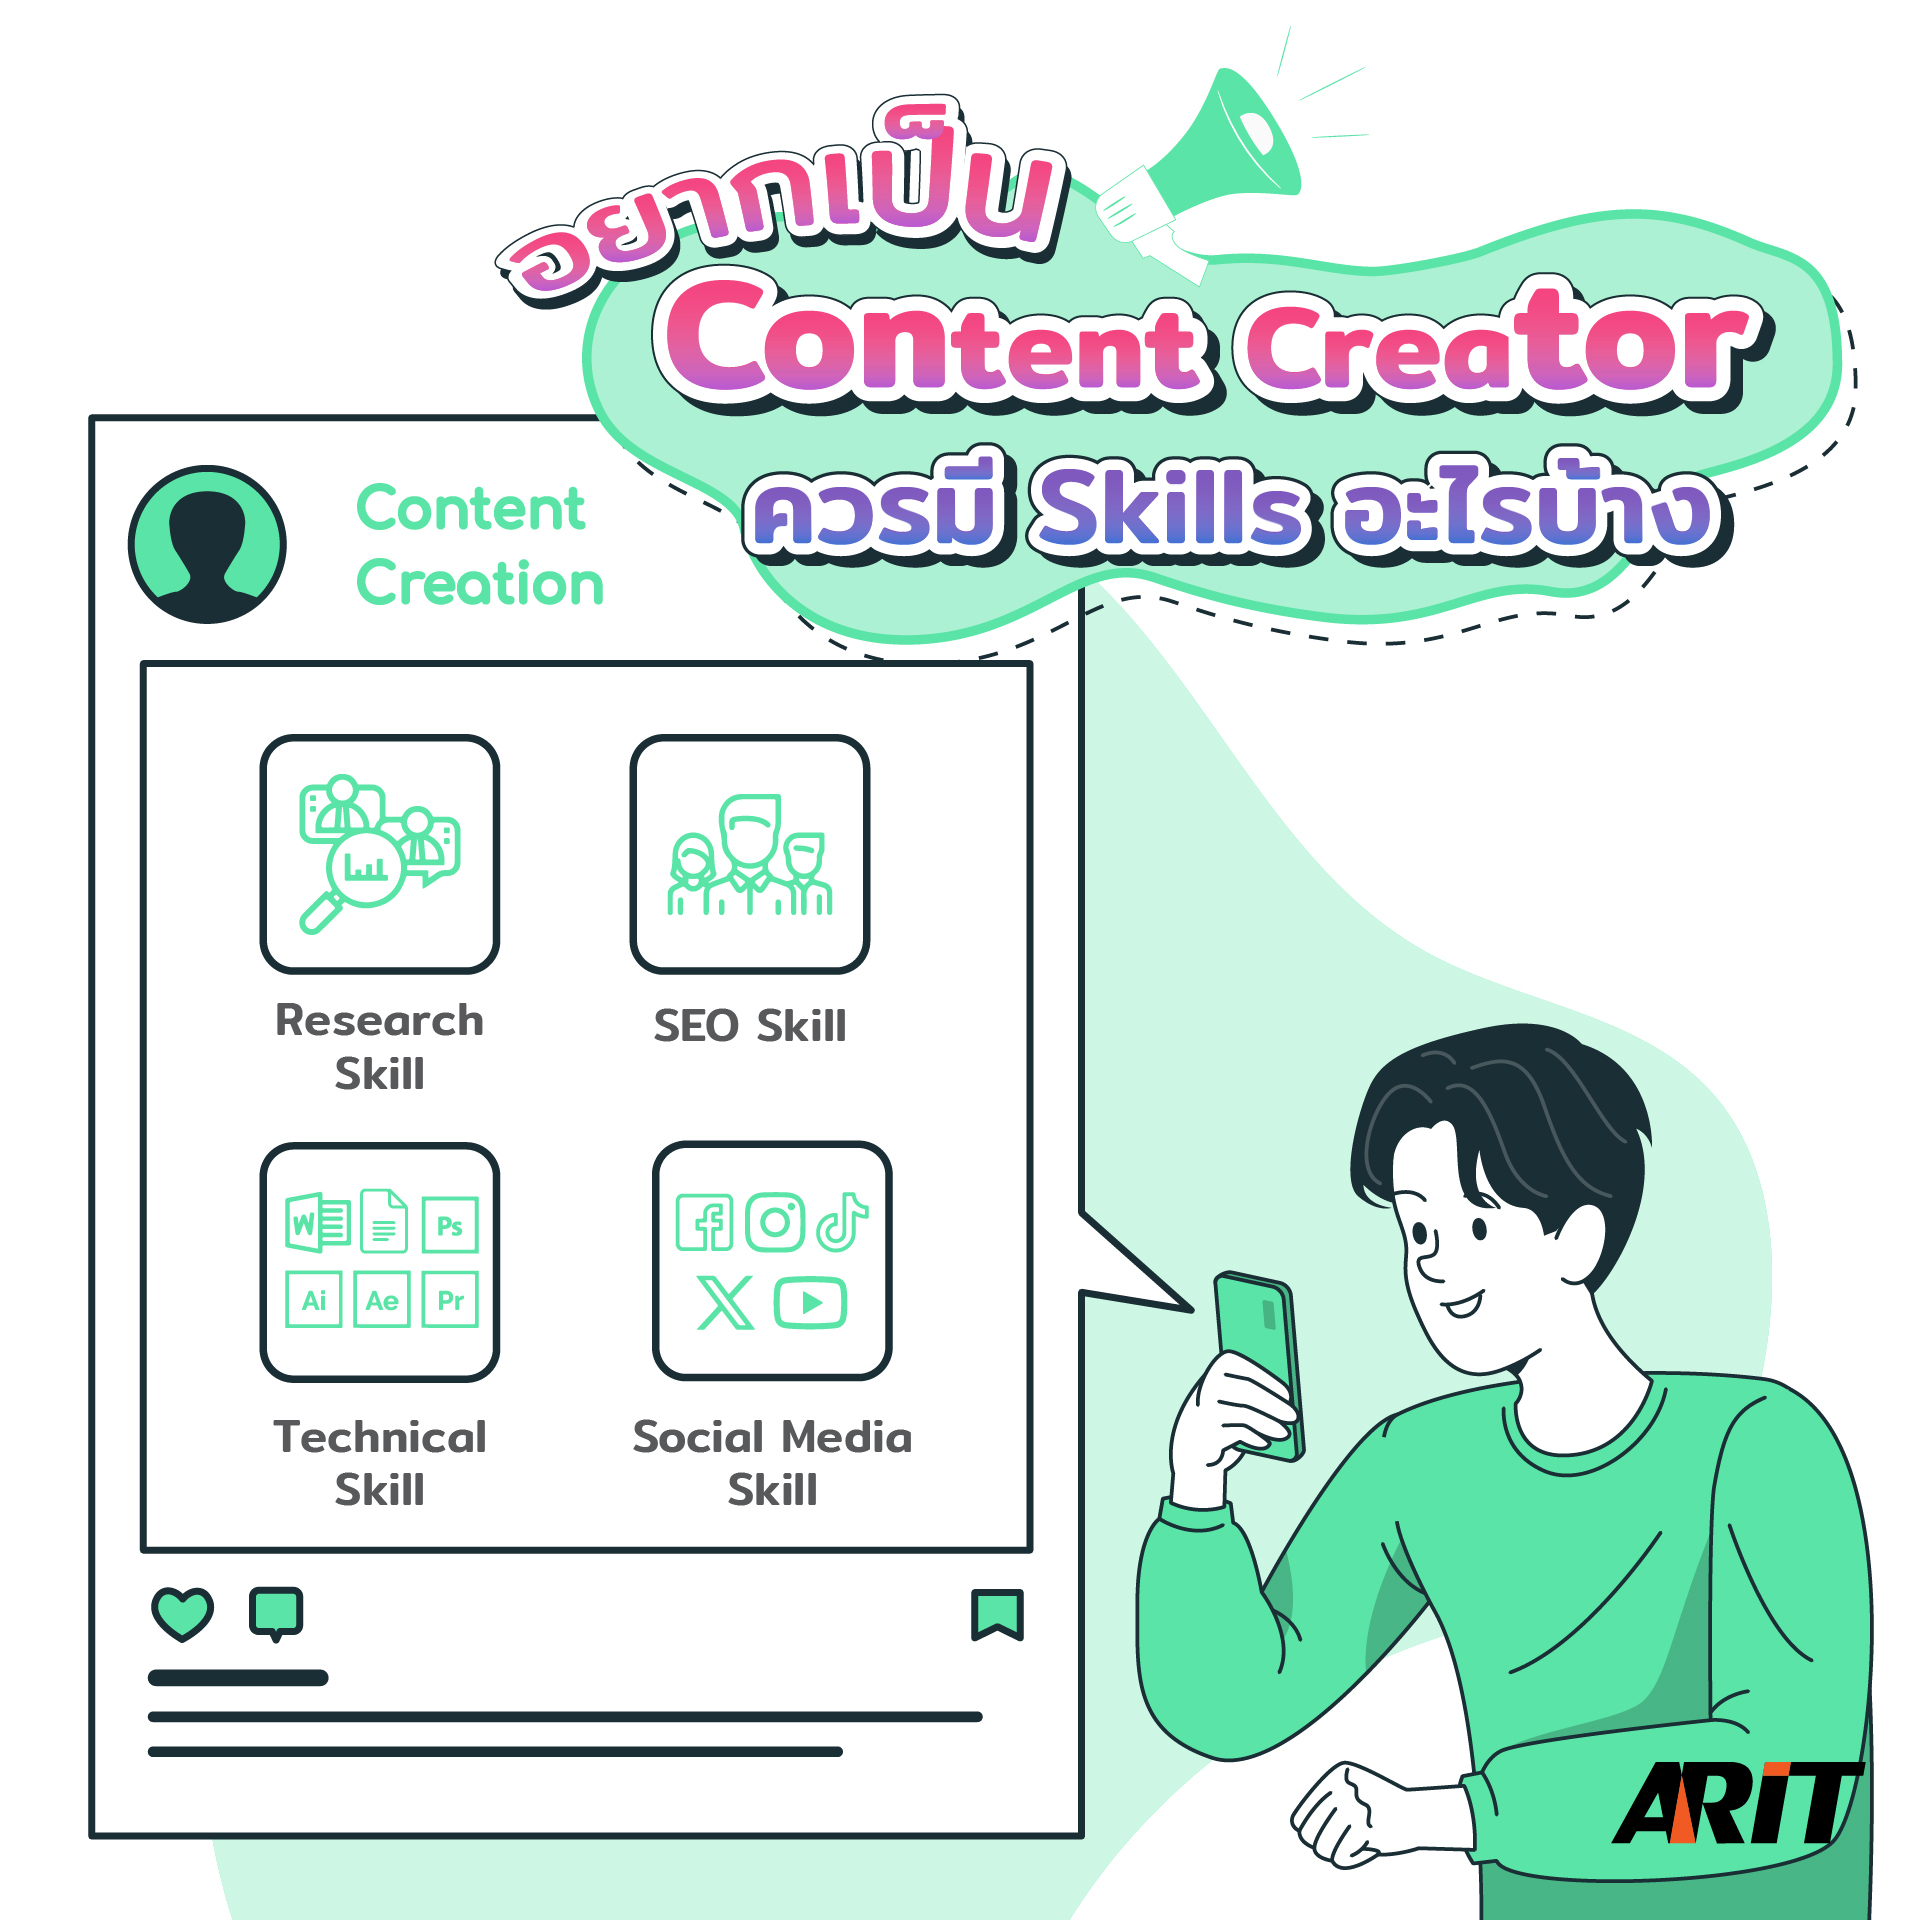 Content Creator Skills